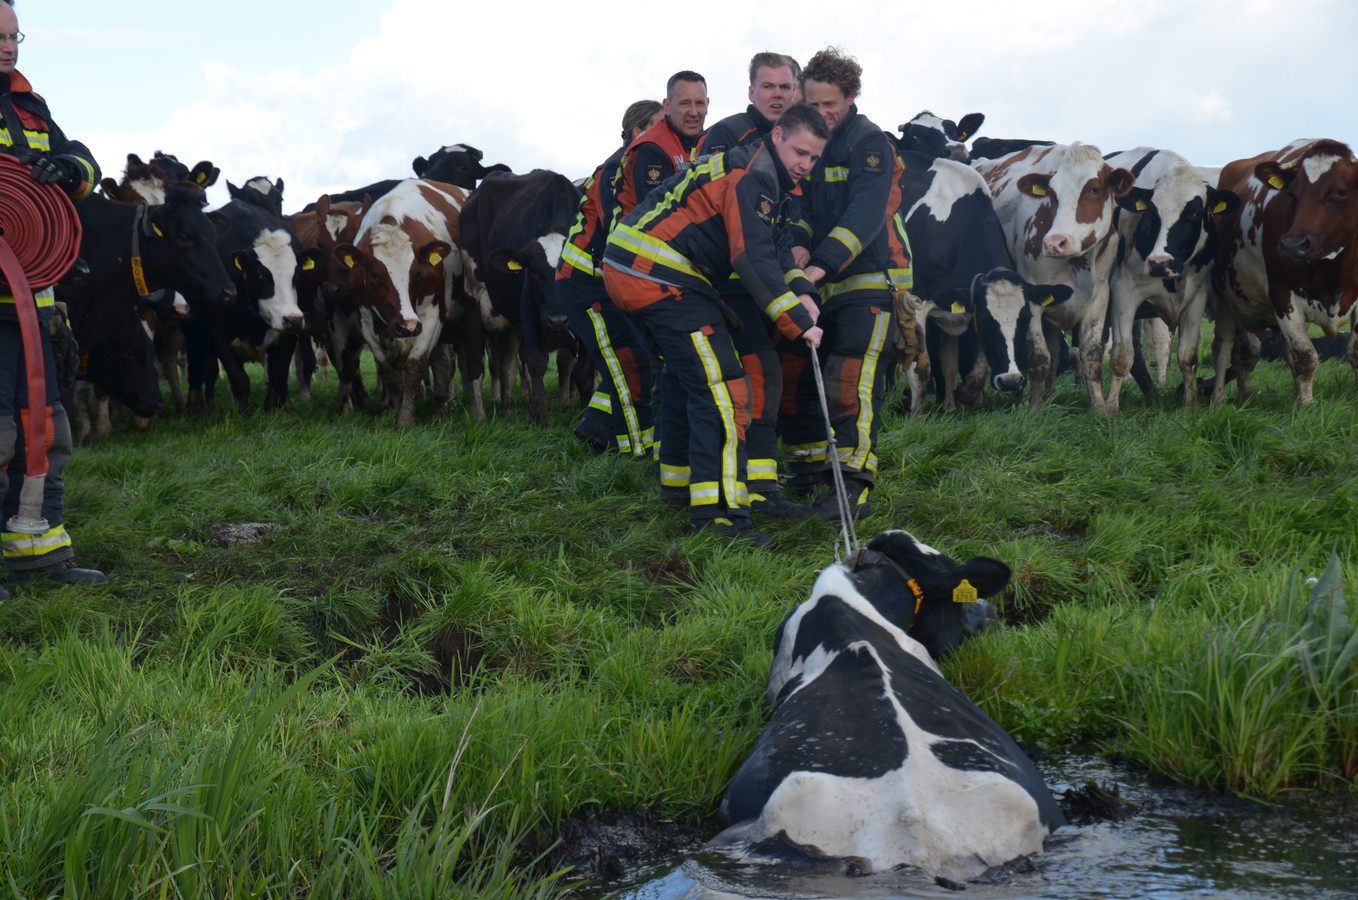 De Reeuwijkse brandweer redt een koe uit de sloot.